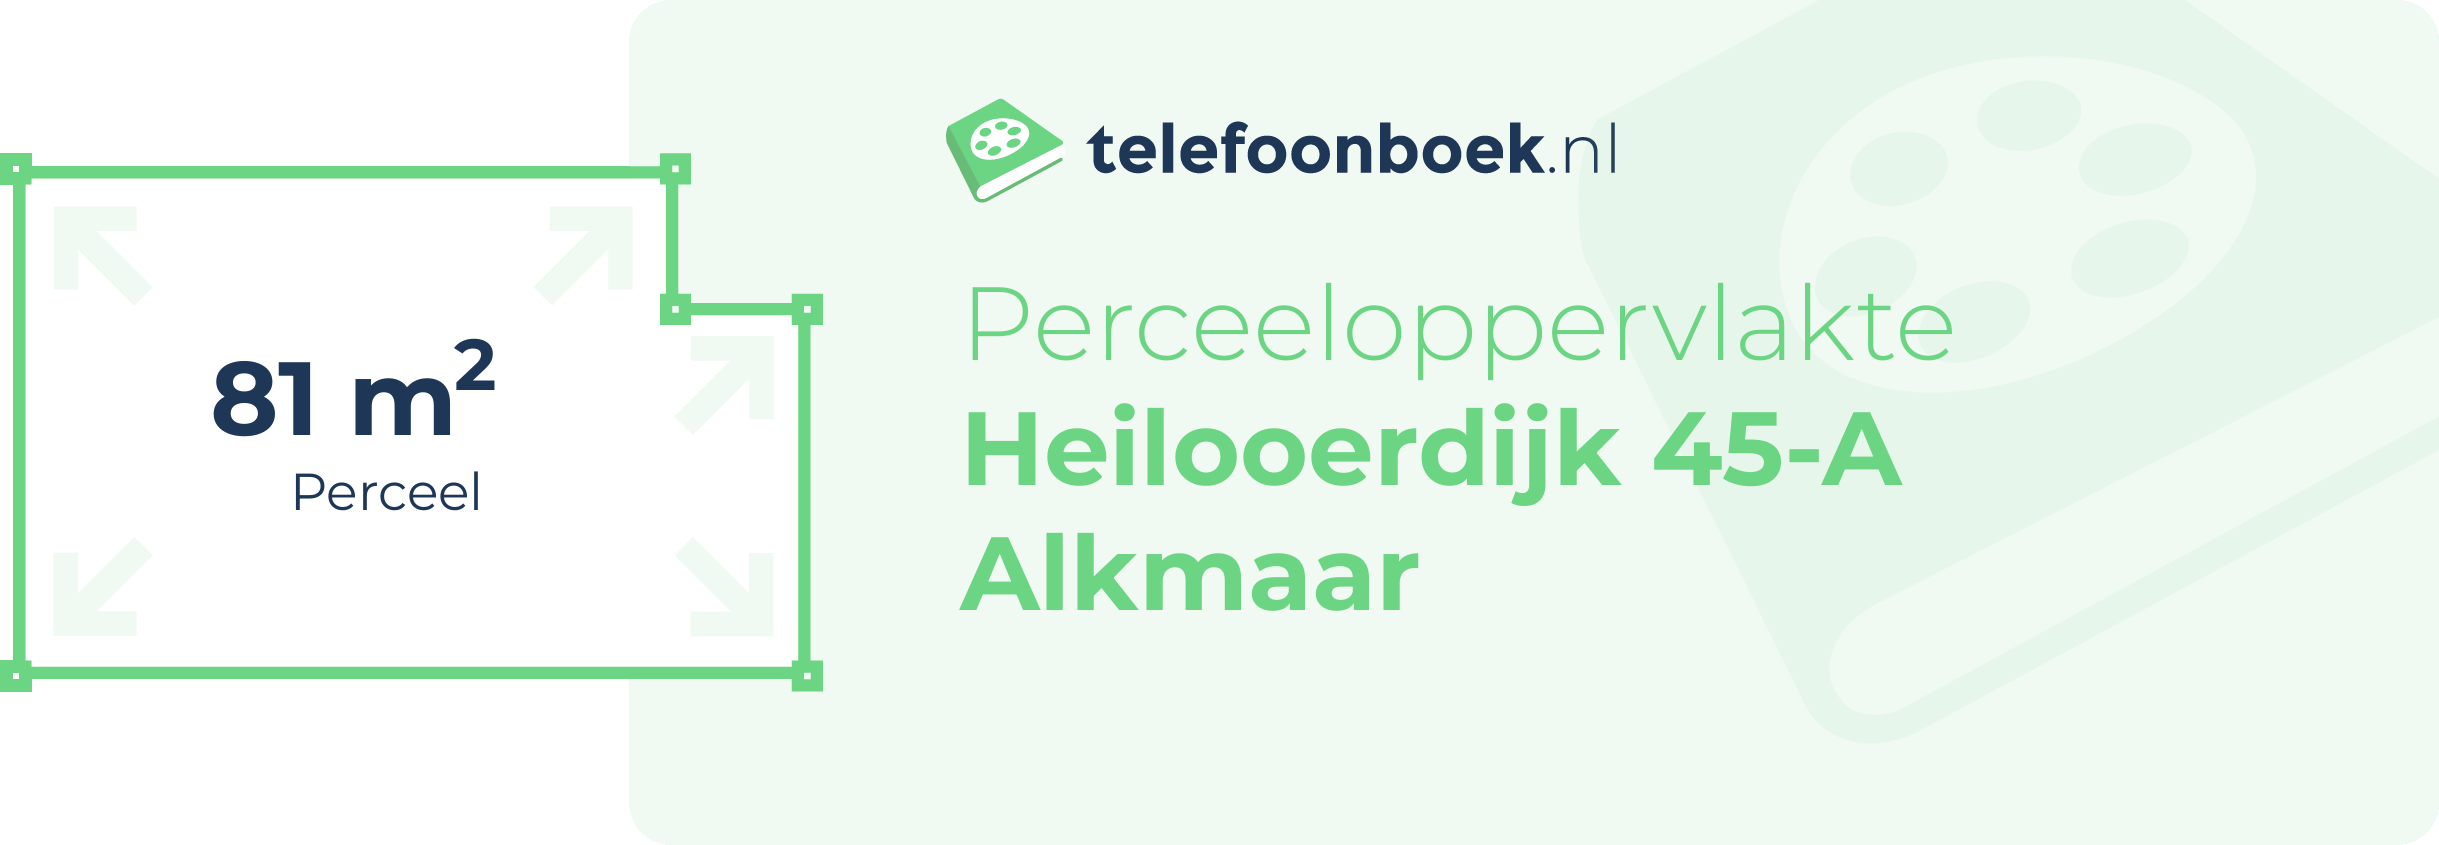 Perceeloppervlakte Heilooerdijk 45-A Alkmaar